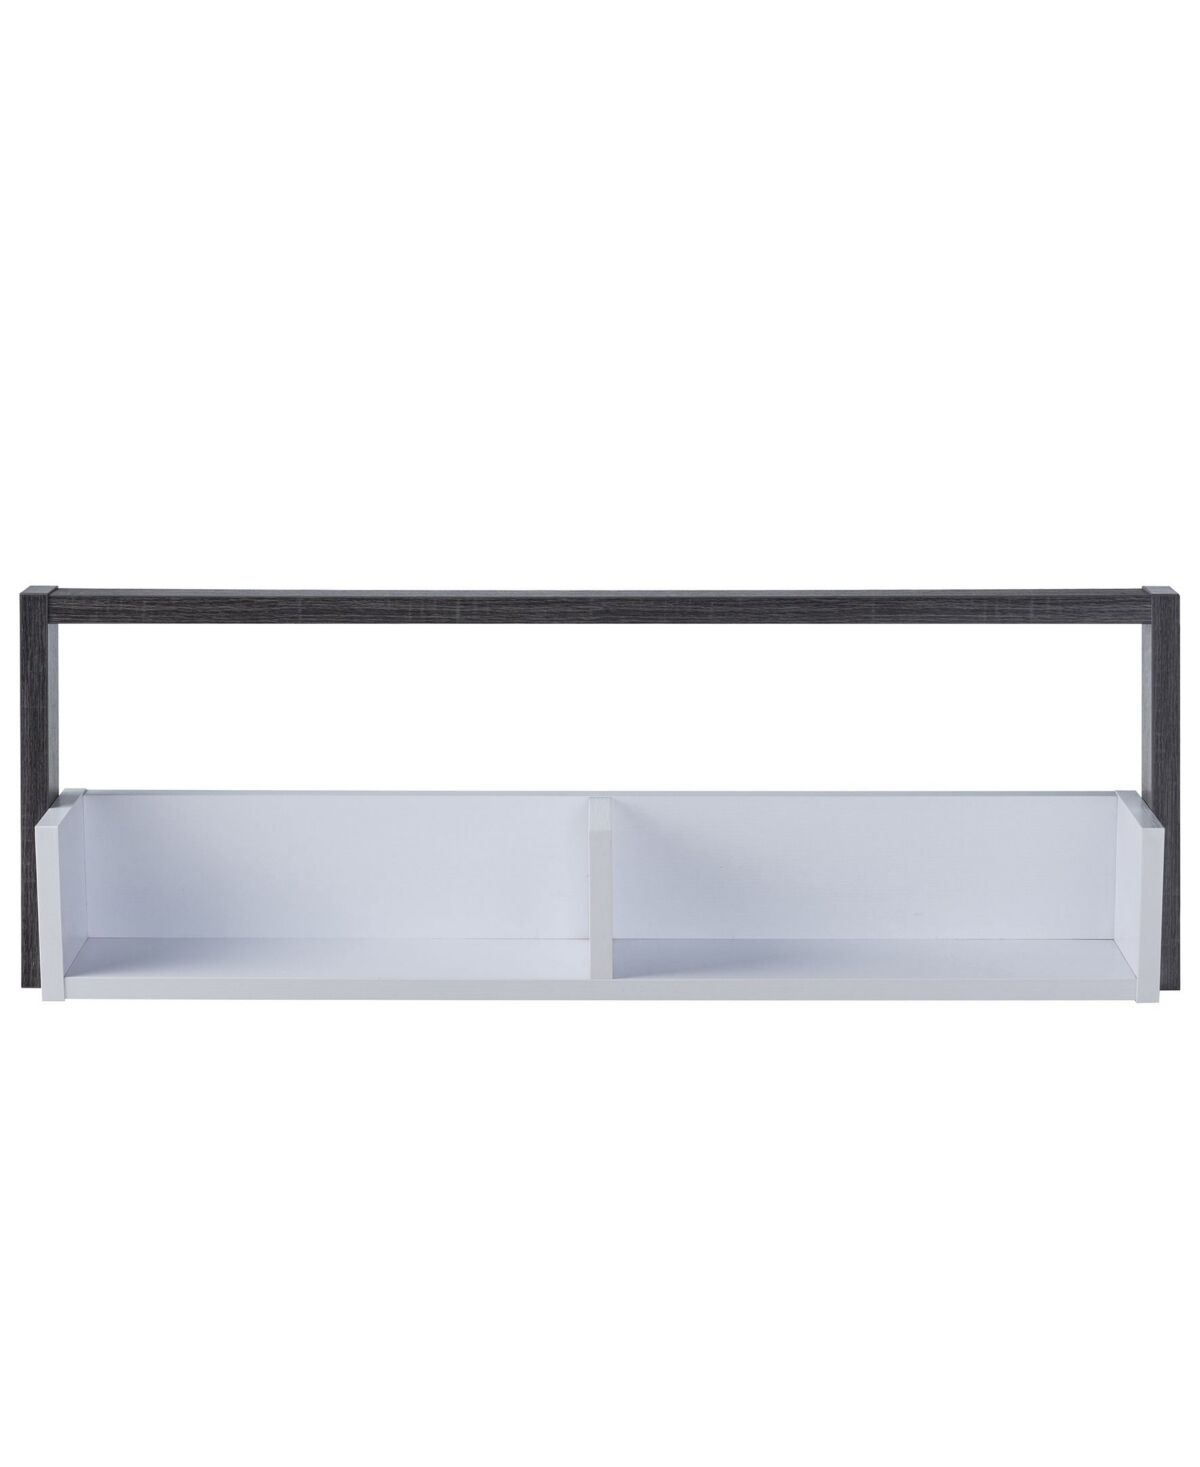 Furniture Of America Dellmara 2 Shelves Wall Shelf - White, Distressed Gray